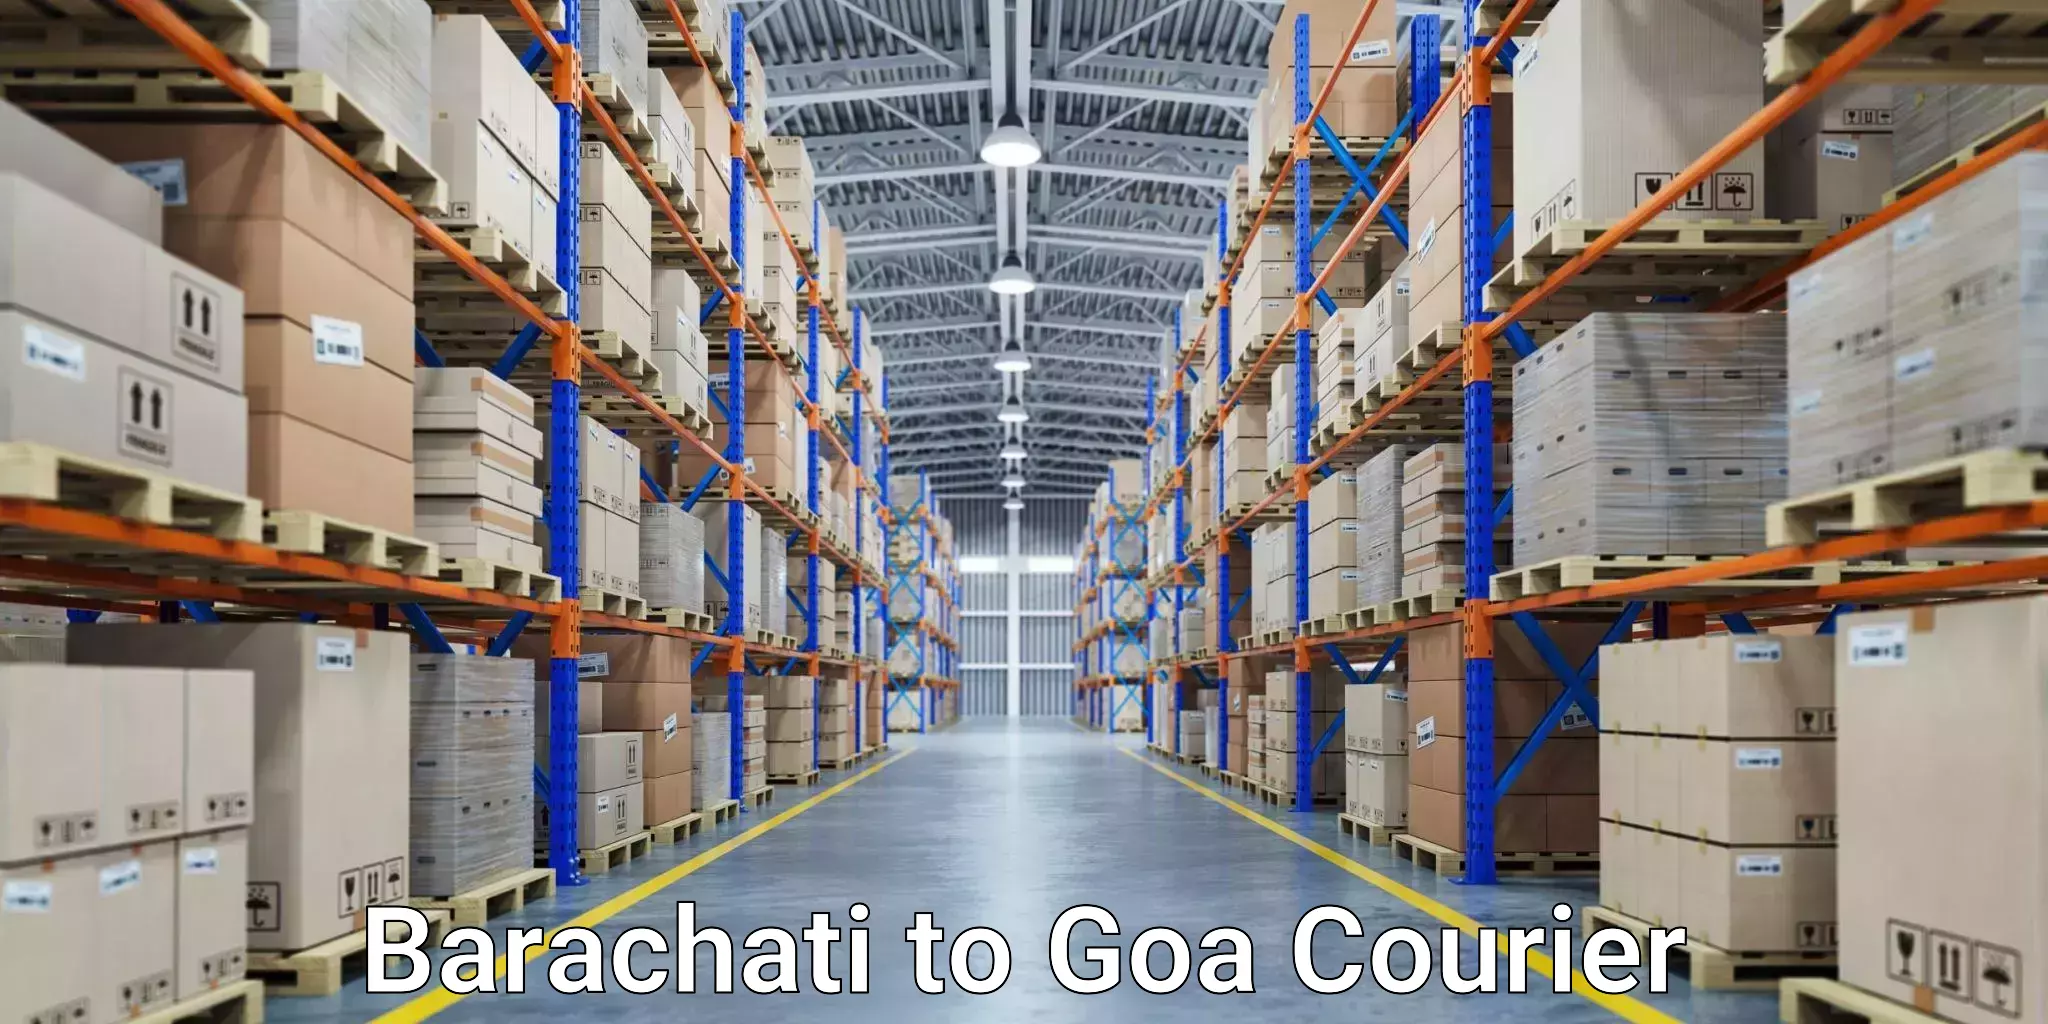 Customer-centric shipping Barachati to Goa